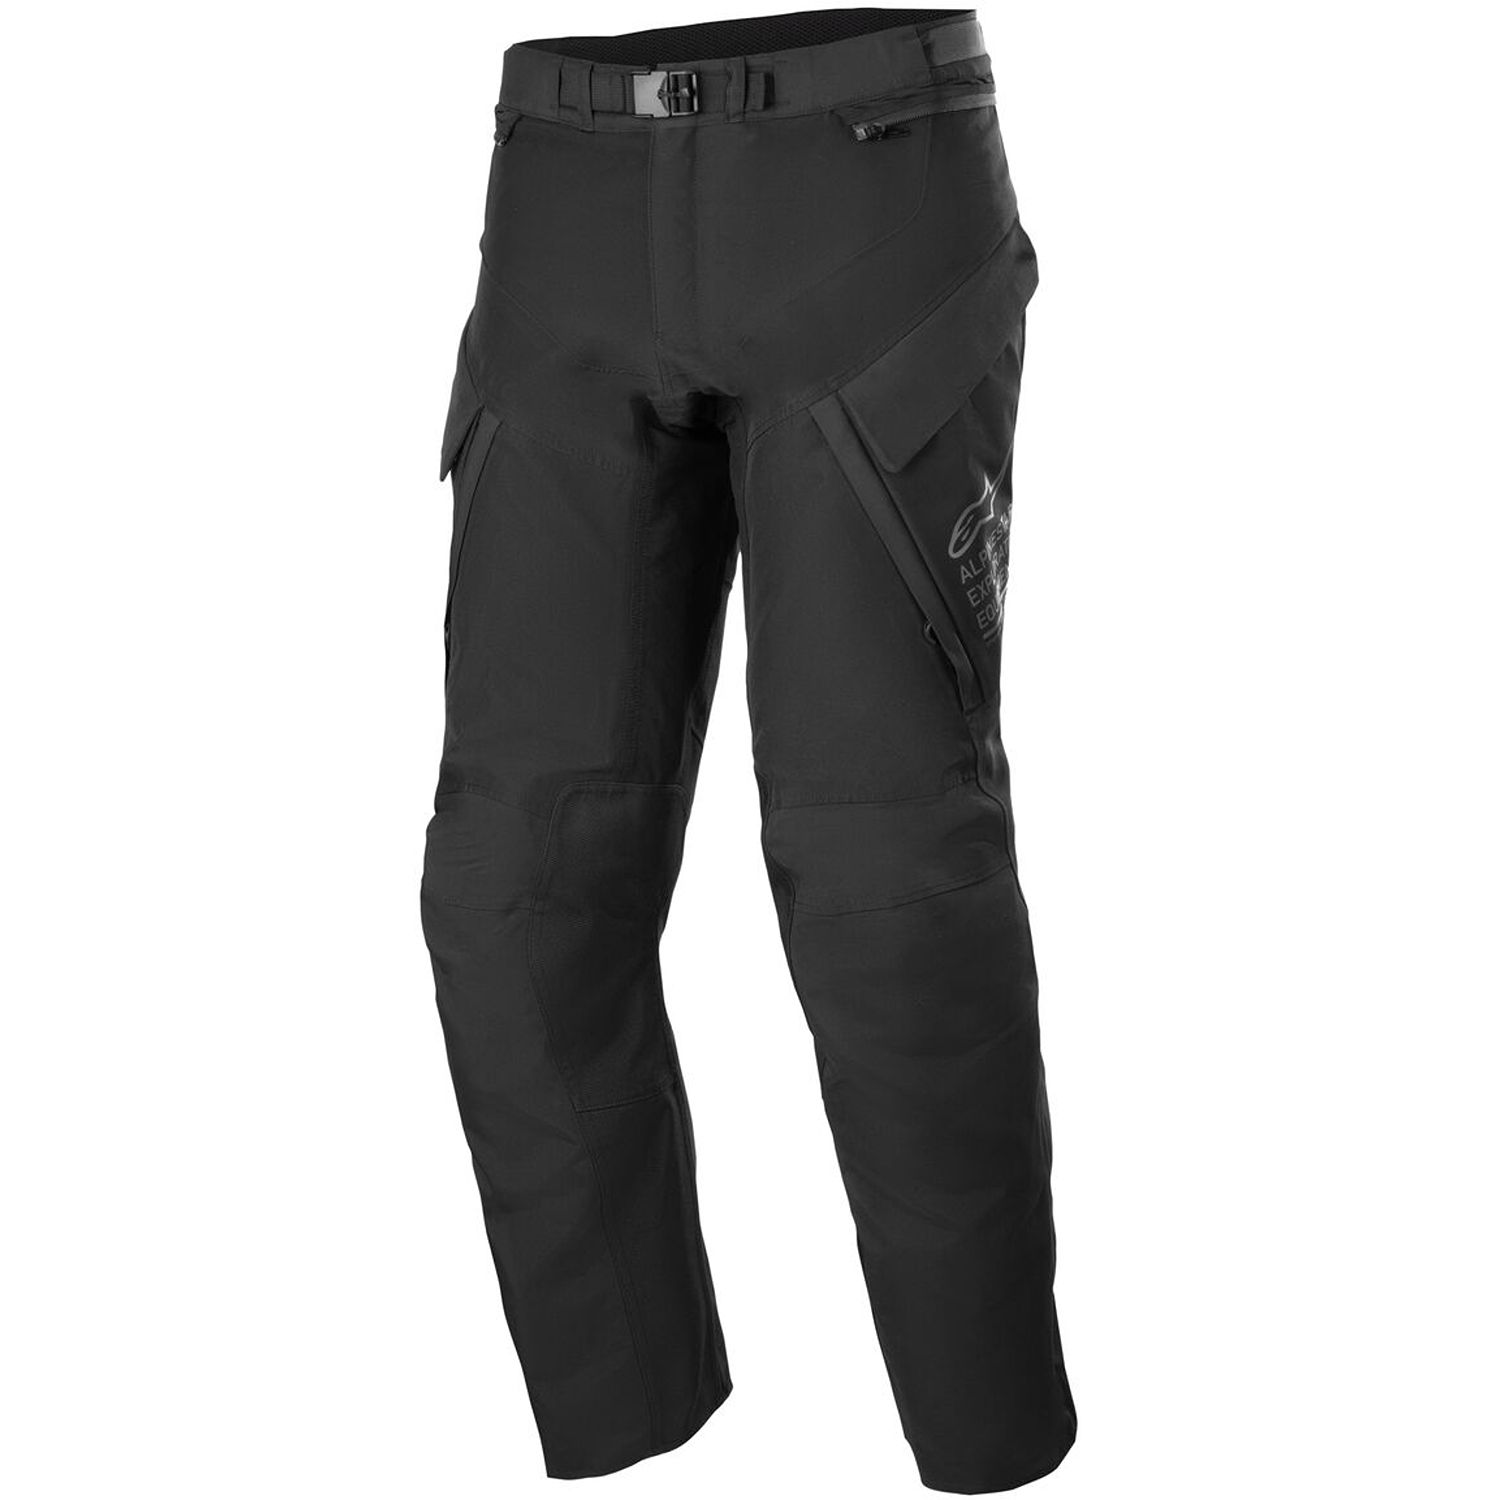 Image of Alpinestars ST-7 2L Gore-Tex Pants Black Dark Grey Size S ID 8059347249667